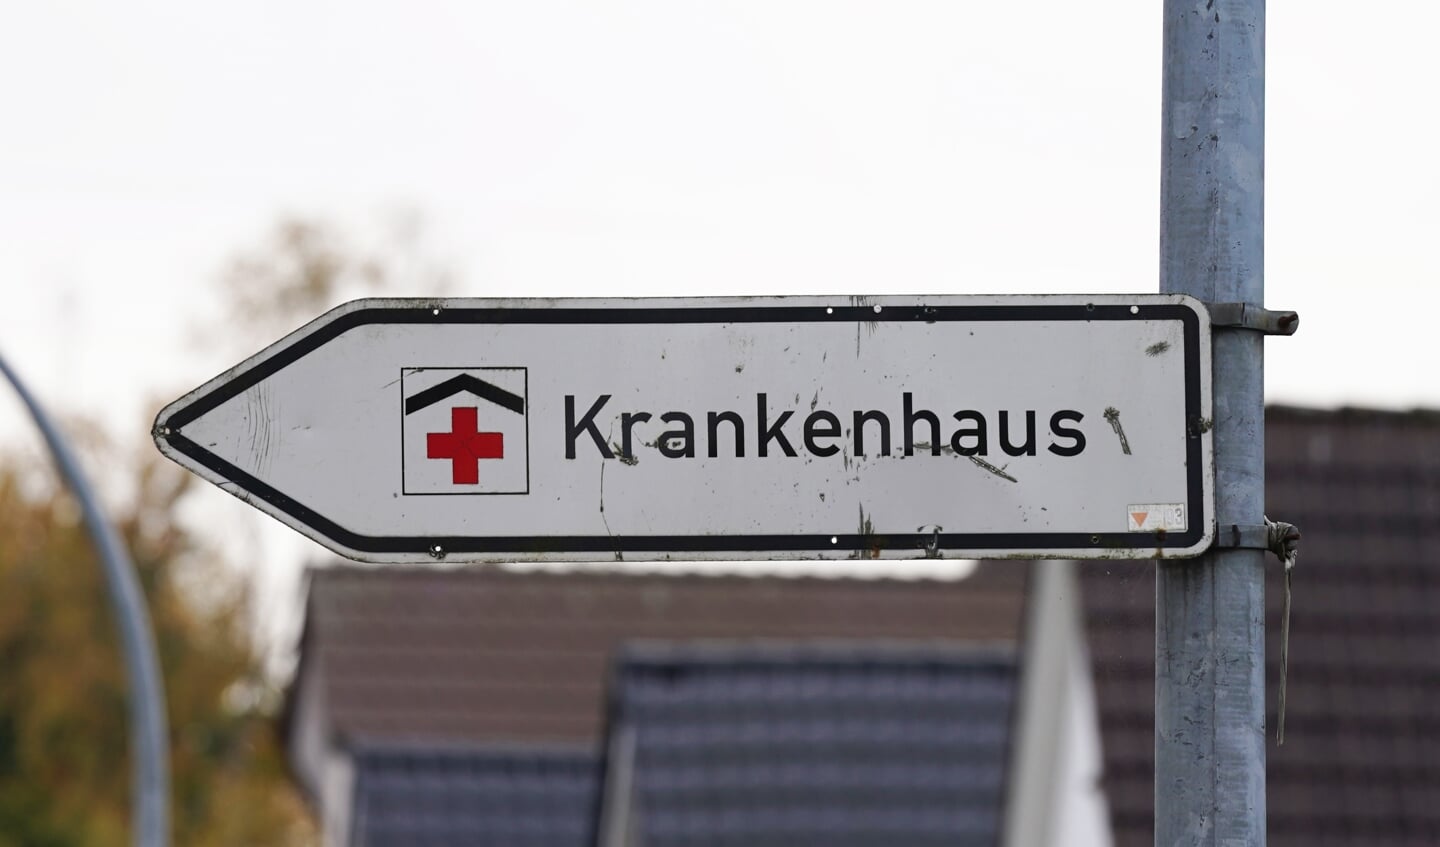 Herz-Kreislauferkrankungen sind nach wie vor die häufigste Ursache für einen Krankenhausaufenthalt in Flensburg. Archivfoto: